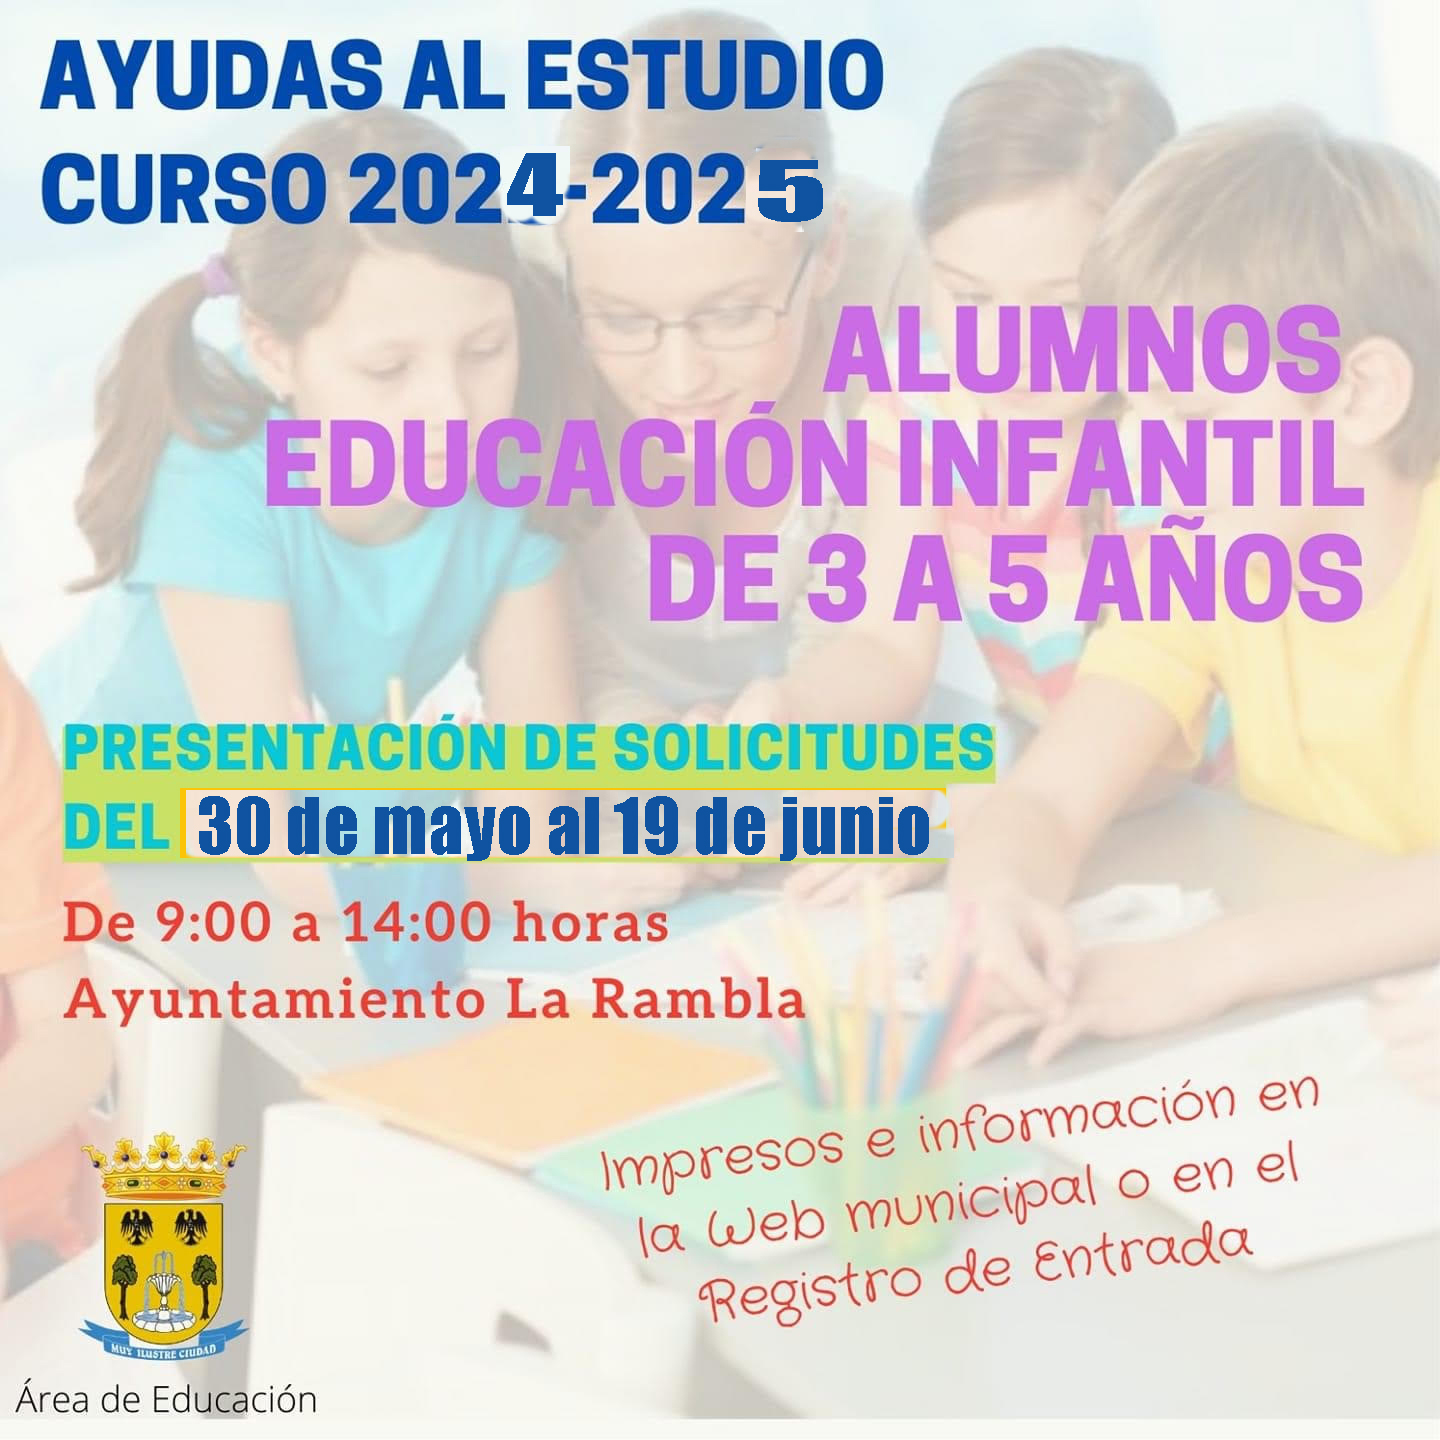 AYUDAS AL ESTUDIO CURSO 2024-2025